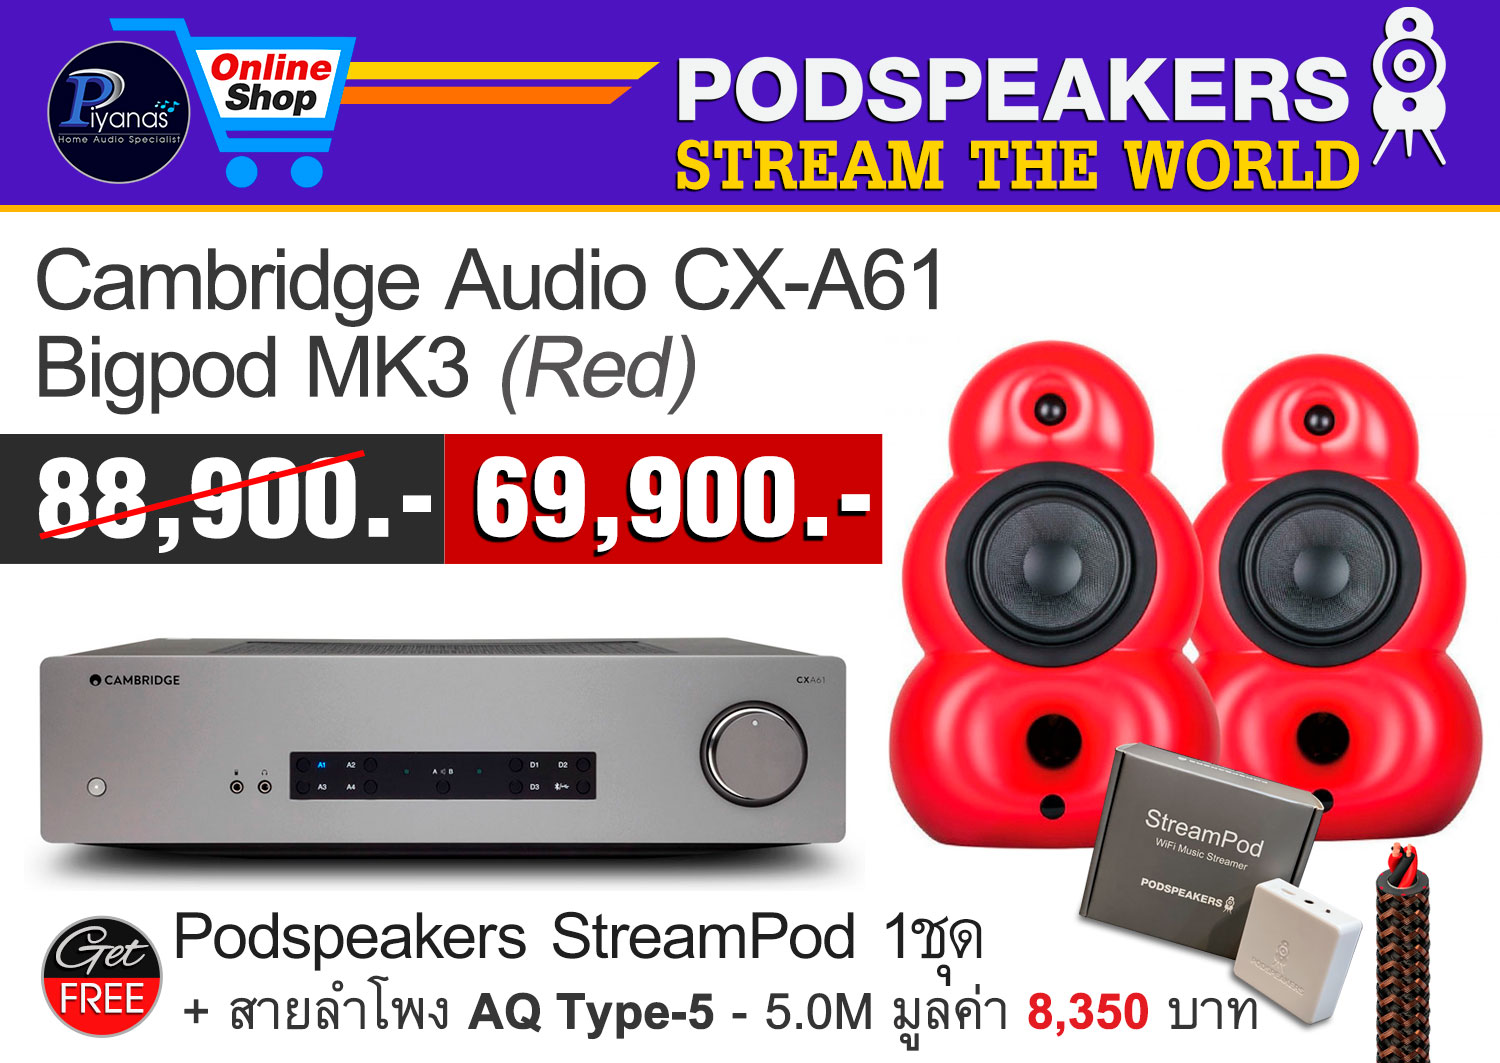 Bigpod MK3 (Red) + CX-A61